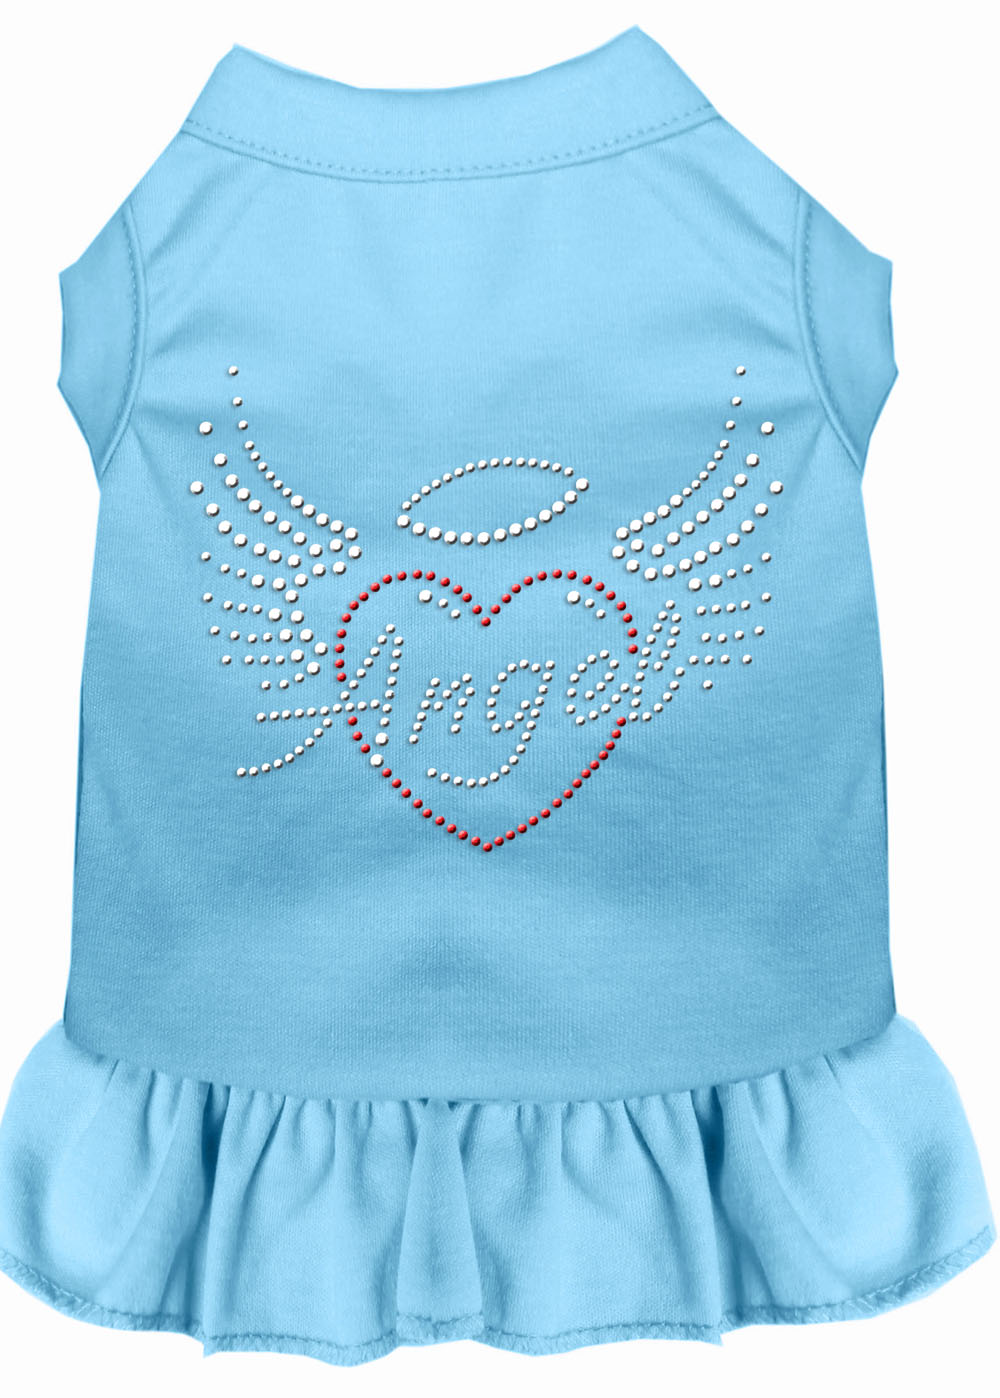 Angel Heart Rhinestone Dress Baby Blue 4x GreatEagleInc